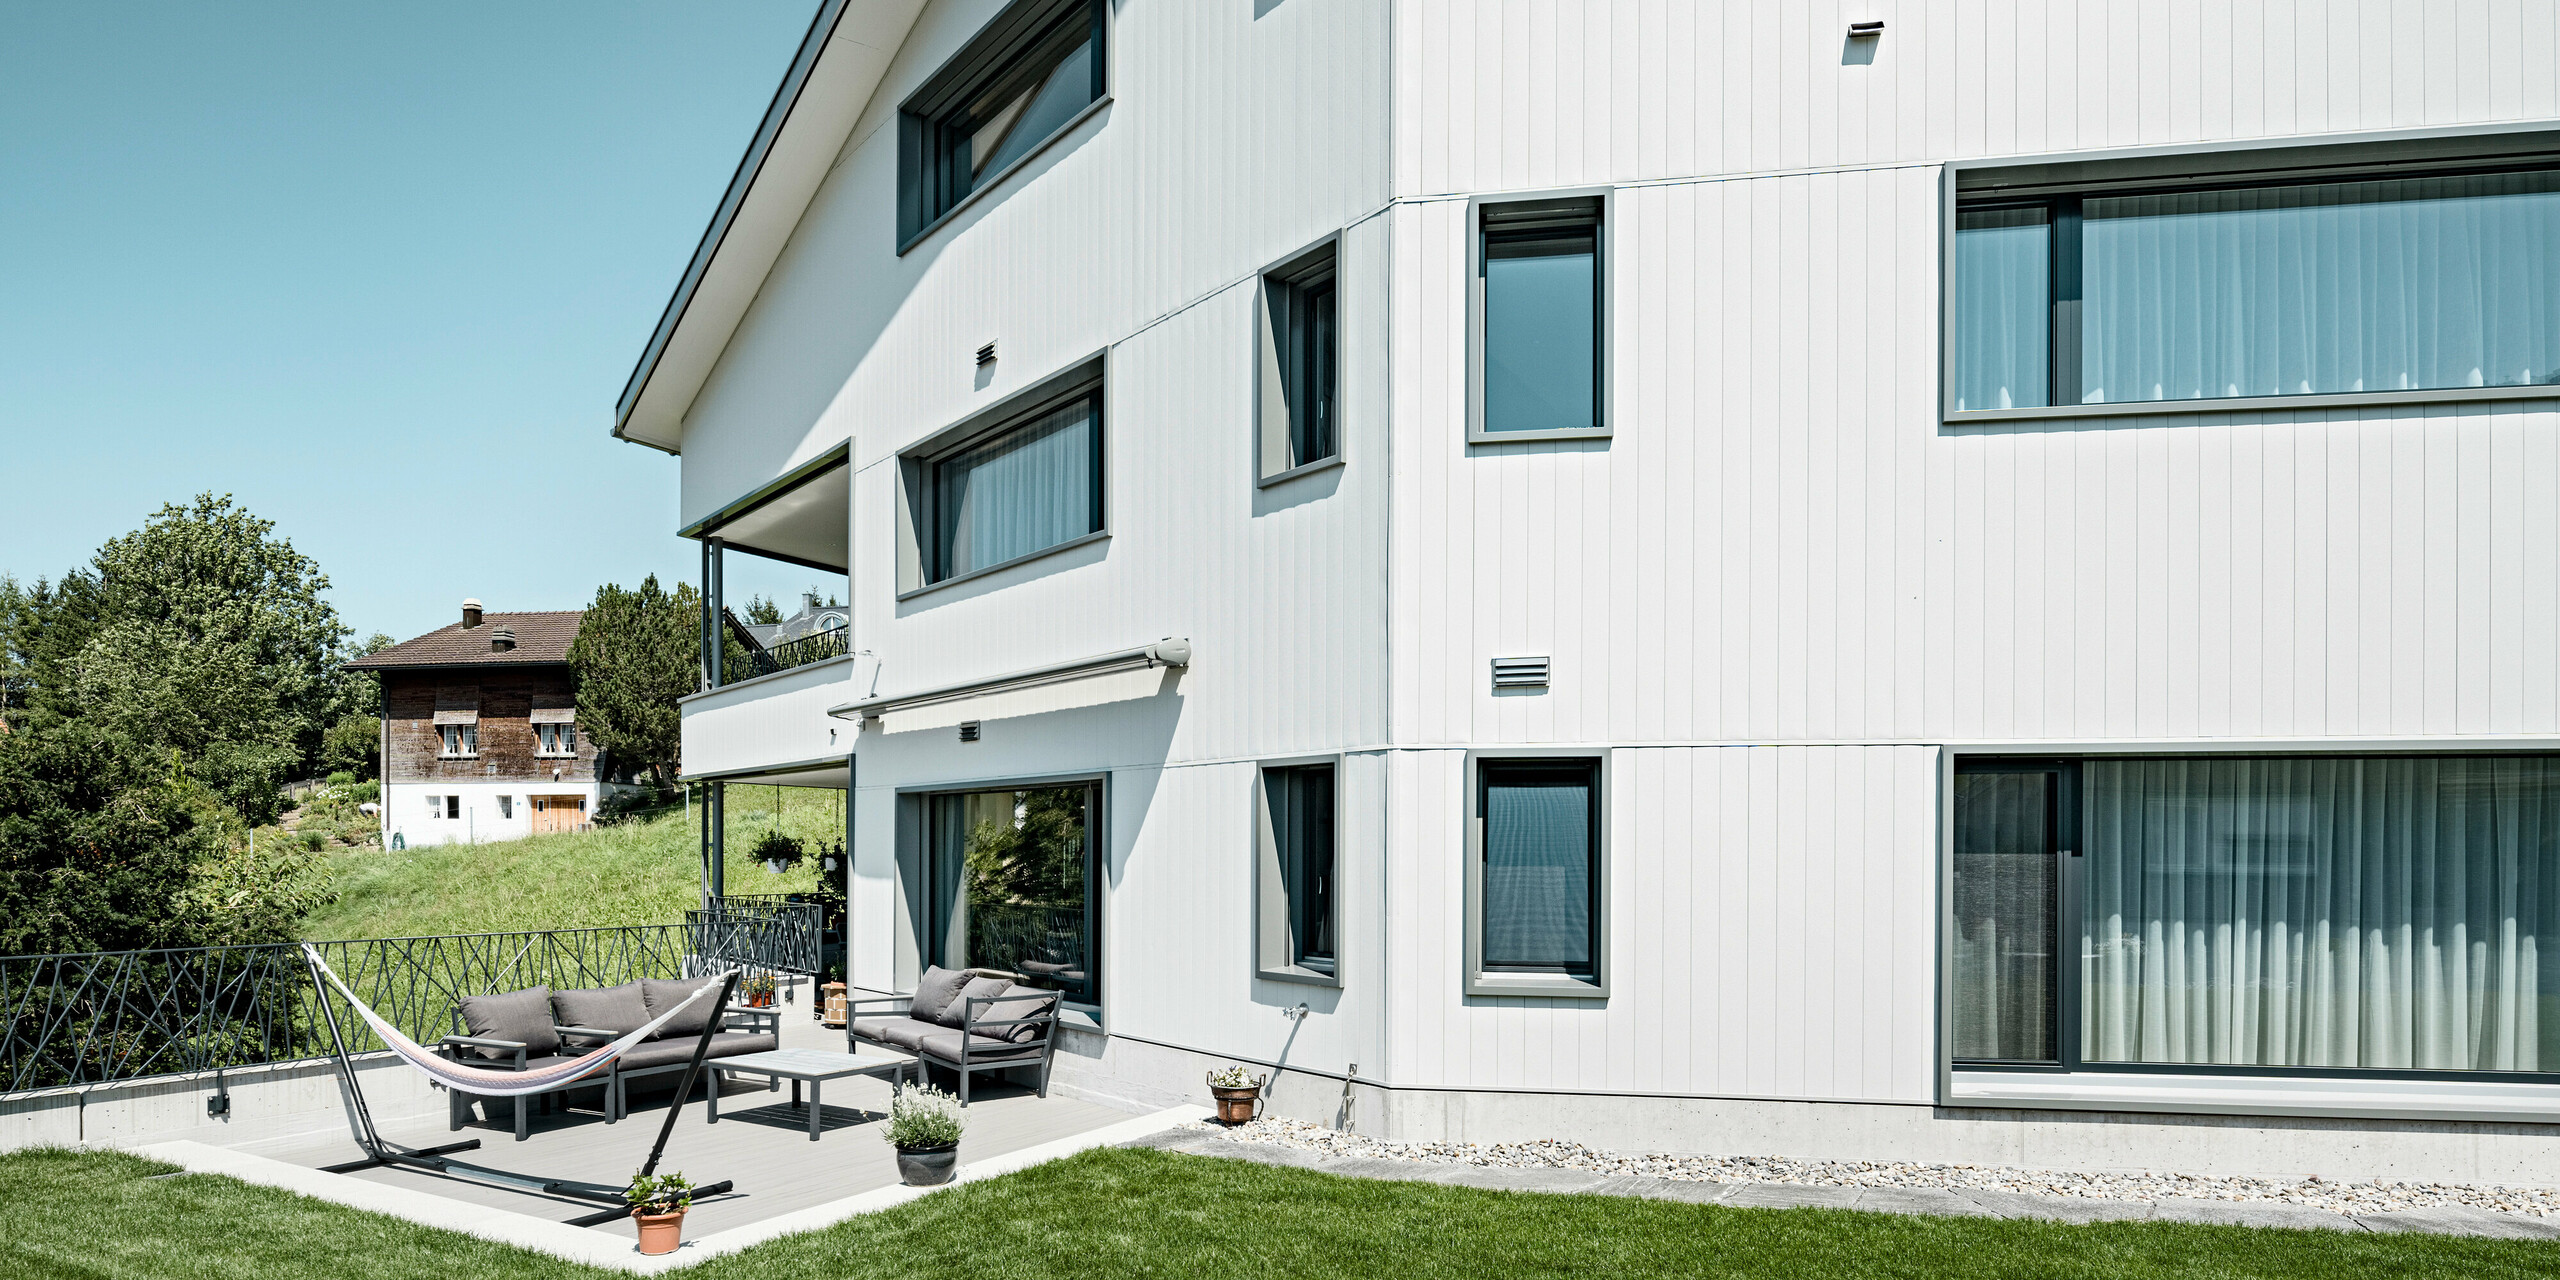 Moderne Wohnkultur in Weissbad, Schweiz: Das Mehrfamilienhaus besticht durch seine PREFA Siding Aluminiumfassade in P.10 Prefaweiß. Die vertikale Anordnung der robusten Fassadenpaneele ergänzt die klare, minimalistische Struktur des Gebäudes. Die Fassade bildet einen stilvollen Kontrast zum gepflegten Grün des Gartens und der einladenden Terrasse, was das Haus zu einem perfekten Beispiel für die Kombination von PREFA Design und Wohnkomfort macht.